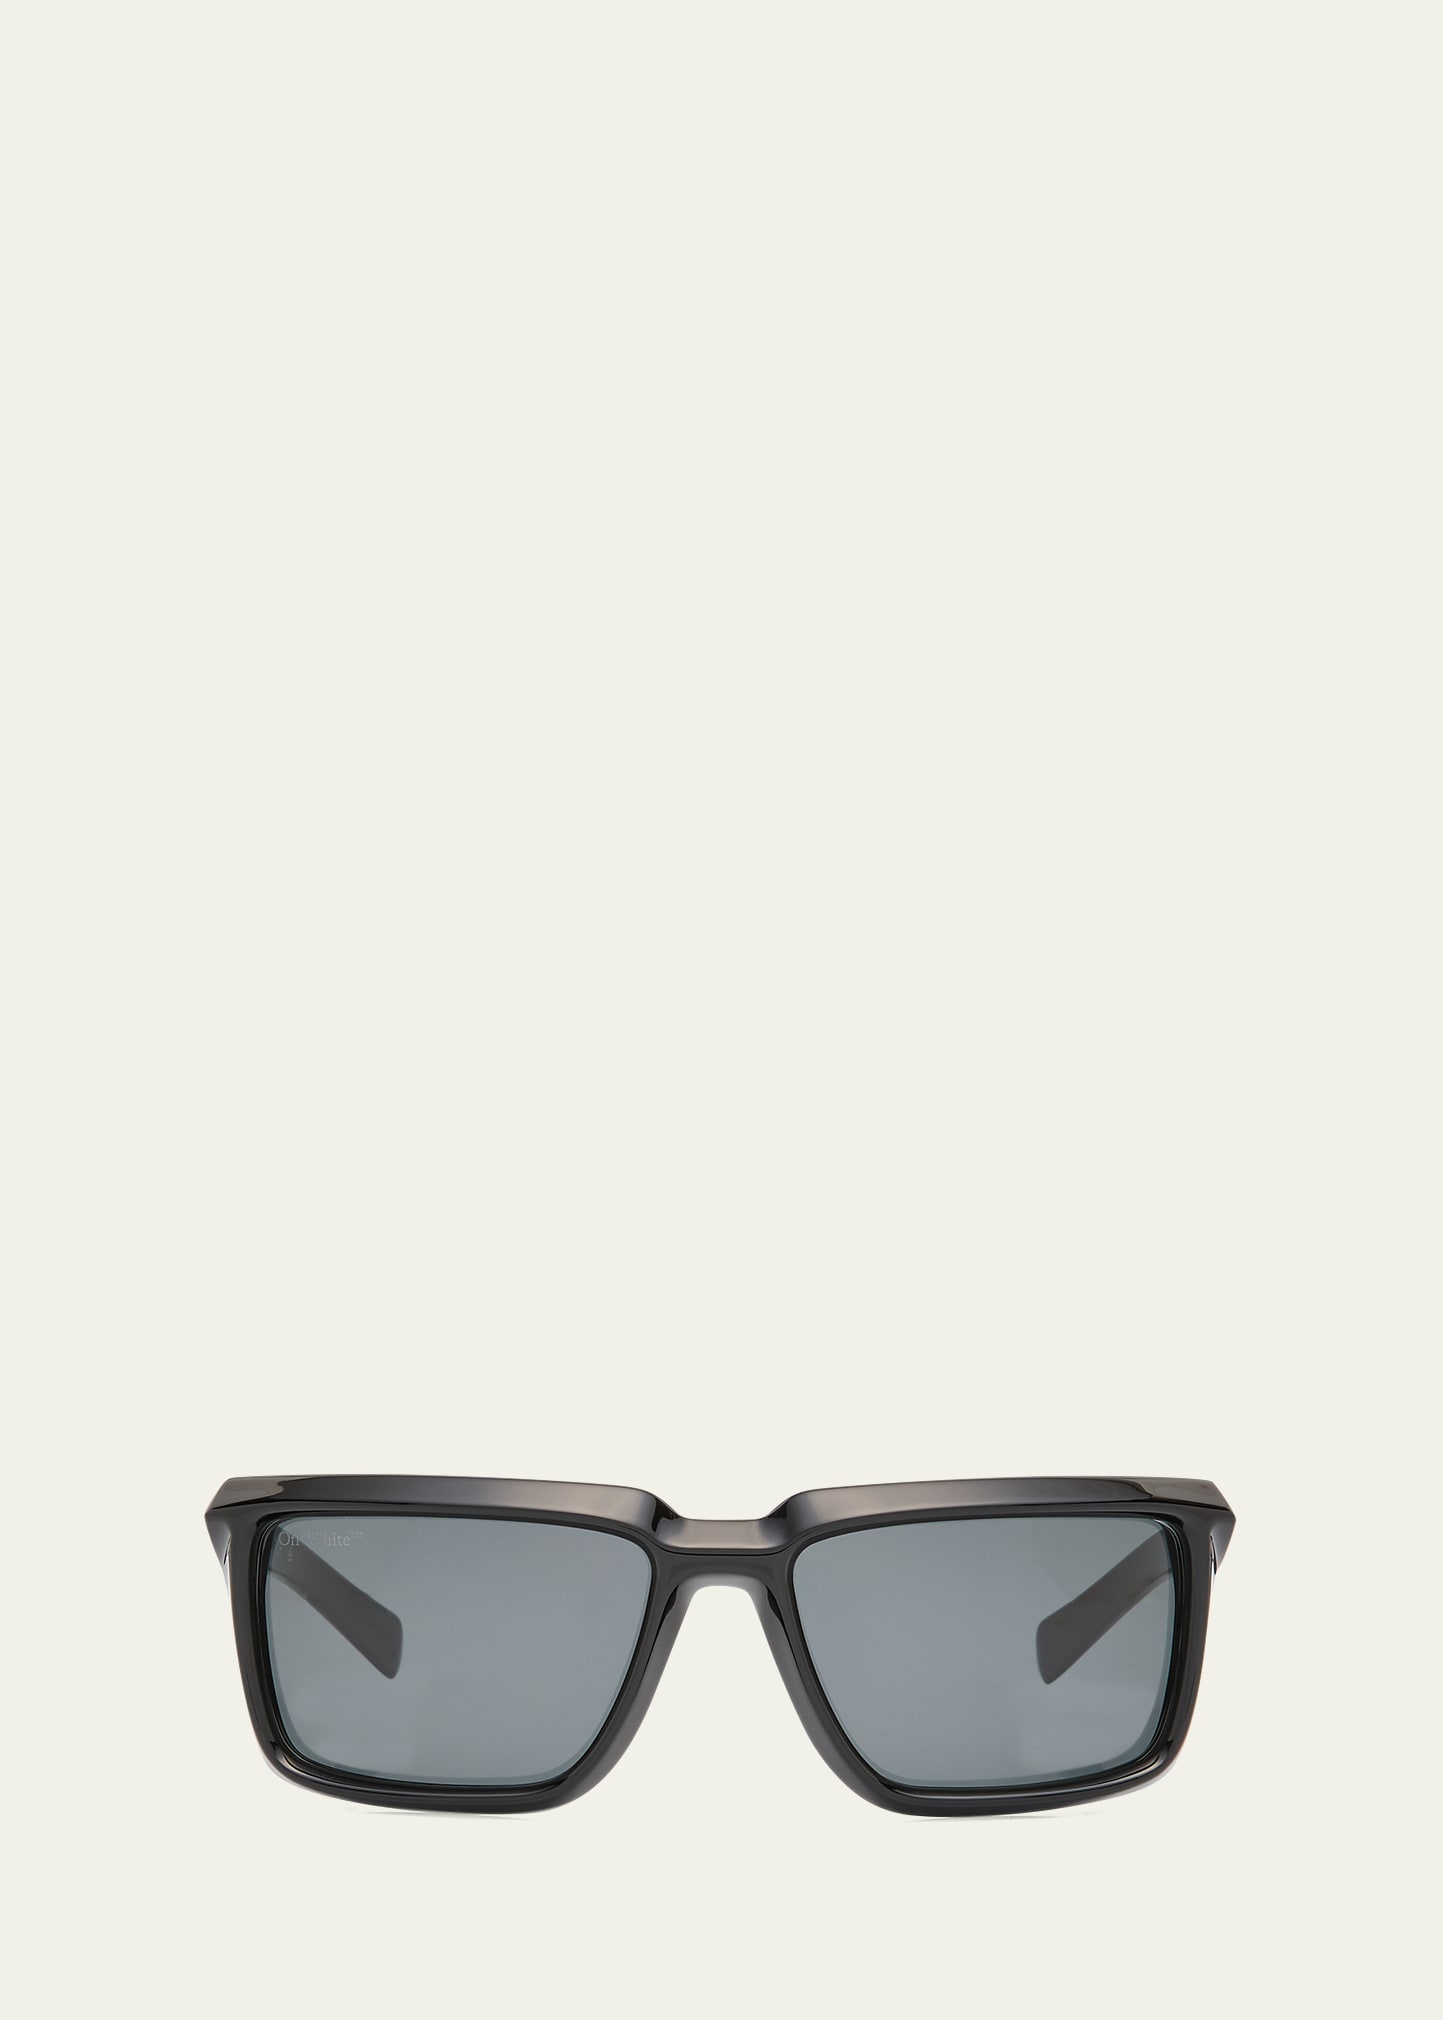 Off-White Men's Sunglasses - White